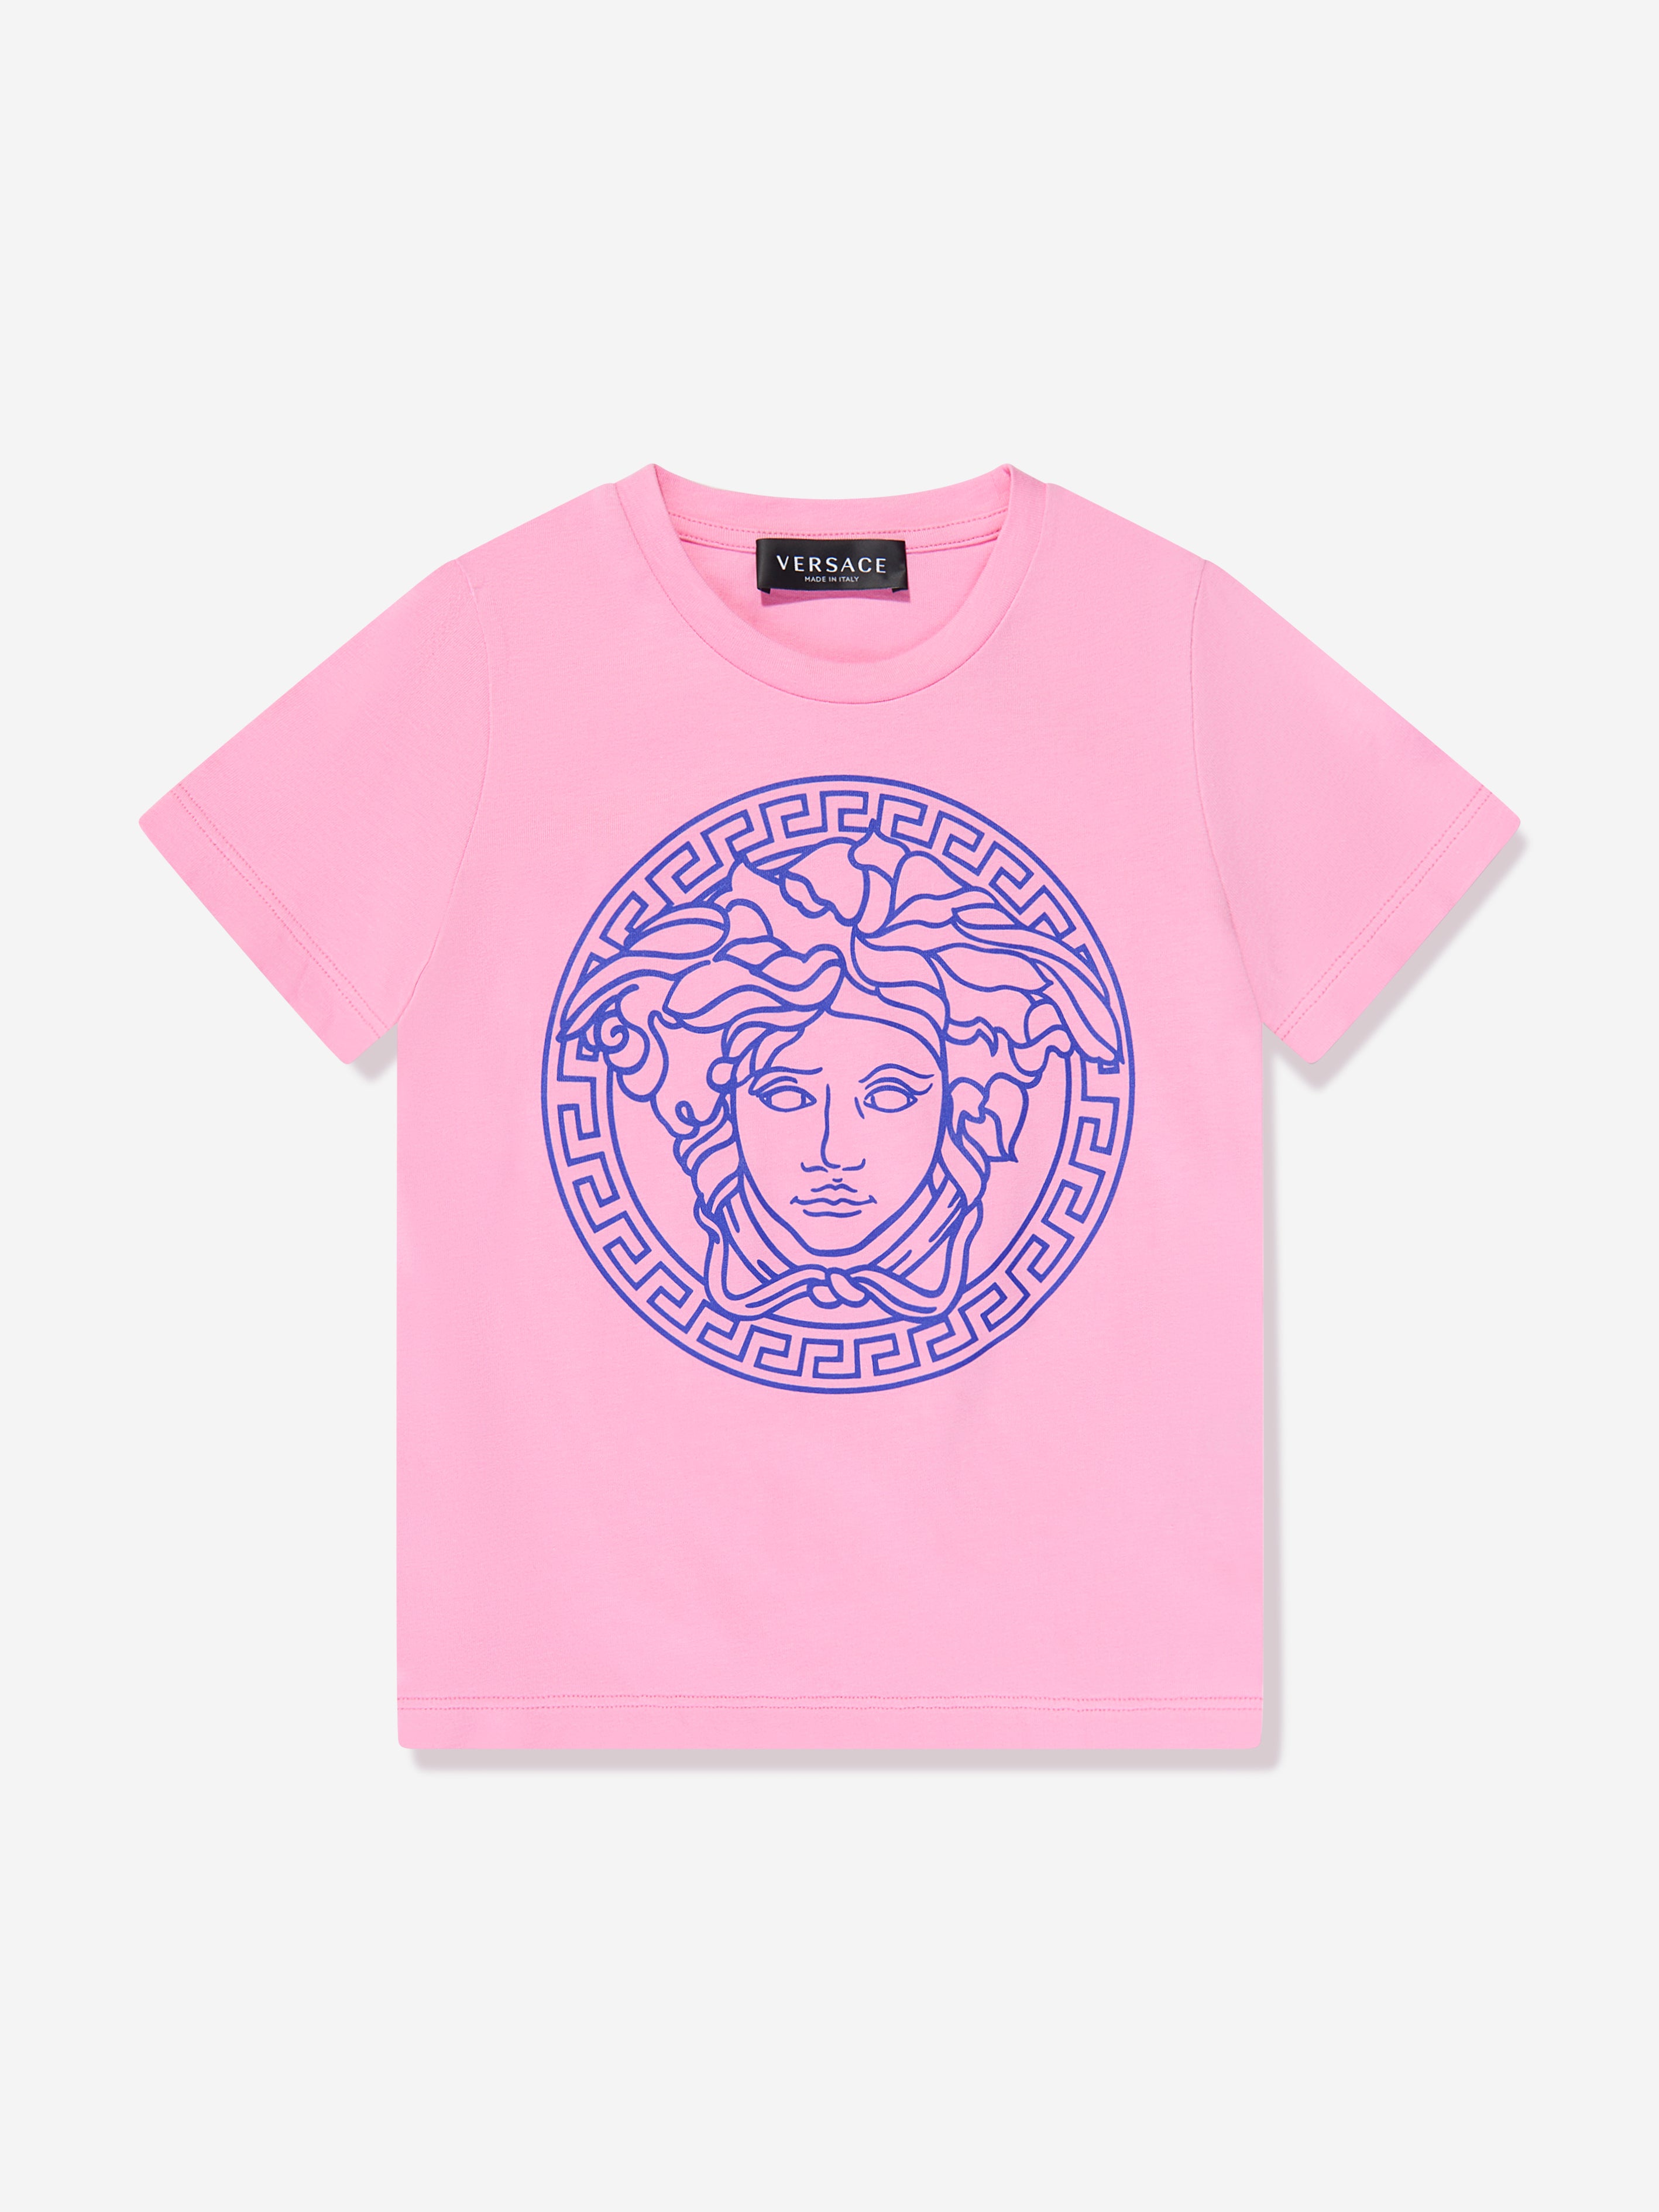 Versace ピンクの女の子のメデューサロゴTシャツ | Childsplay Clothing